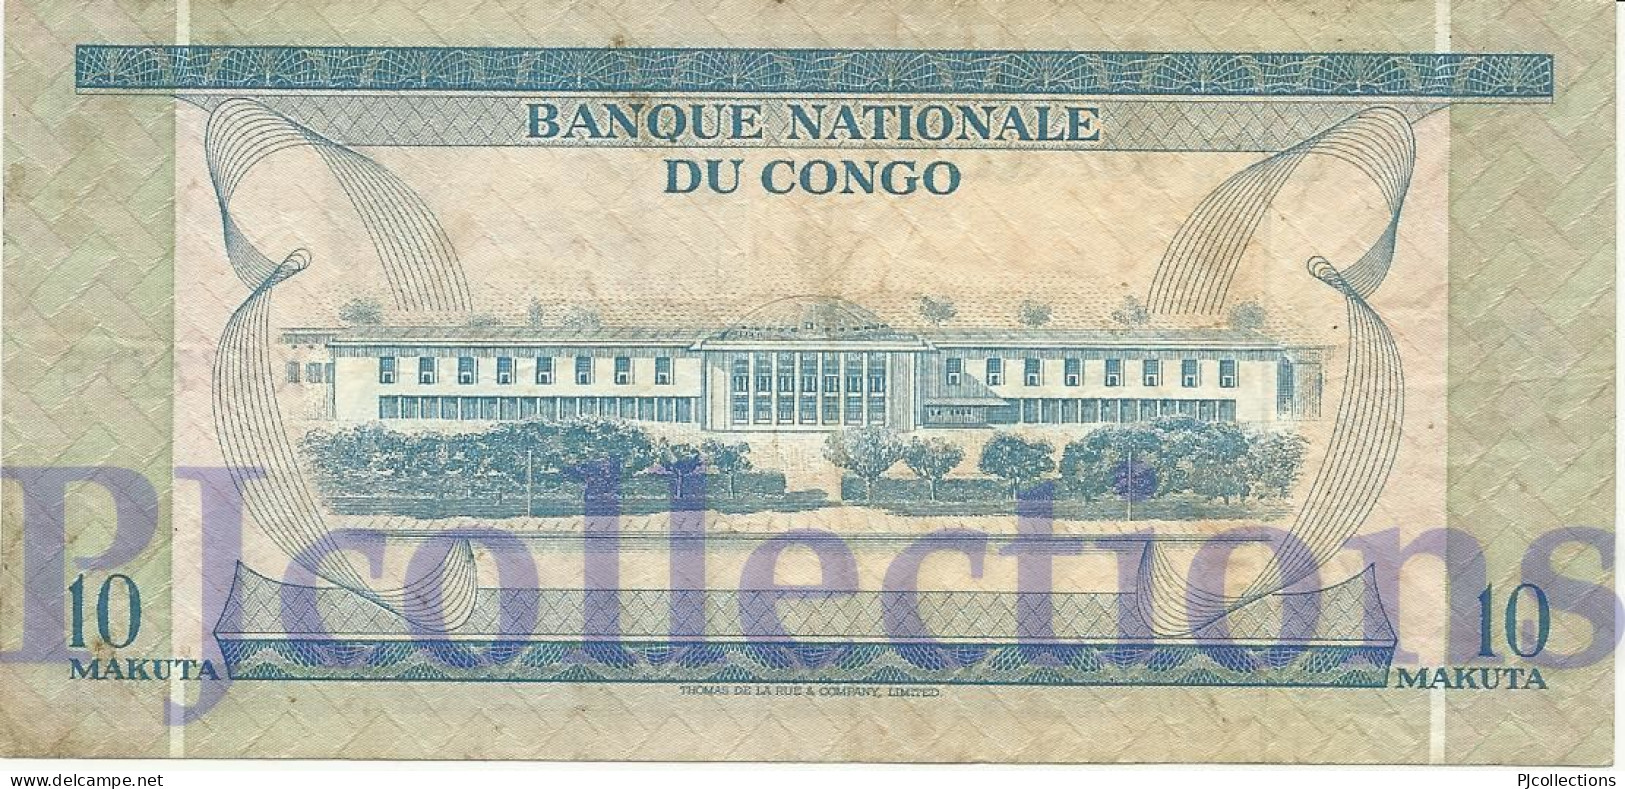 CONGO DEMOCRATIC REPUBLIC 10 MAKUTA 1967 PICK 9a VF - Democratic Republic Of The Congo & Zaire